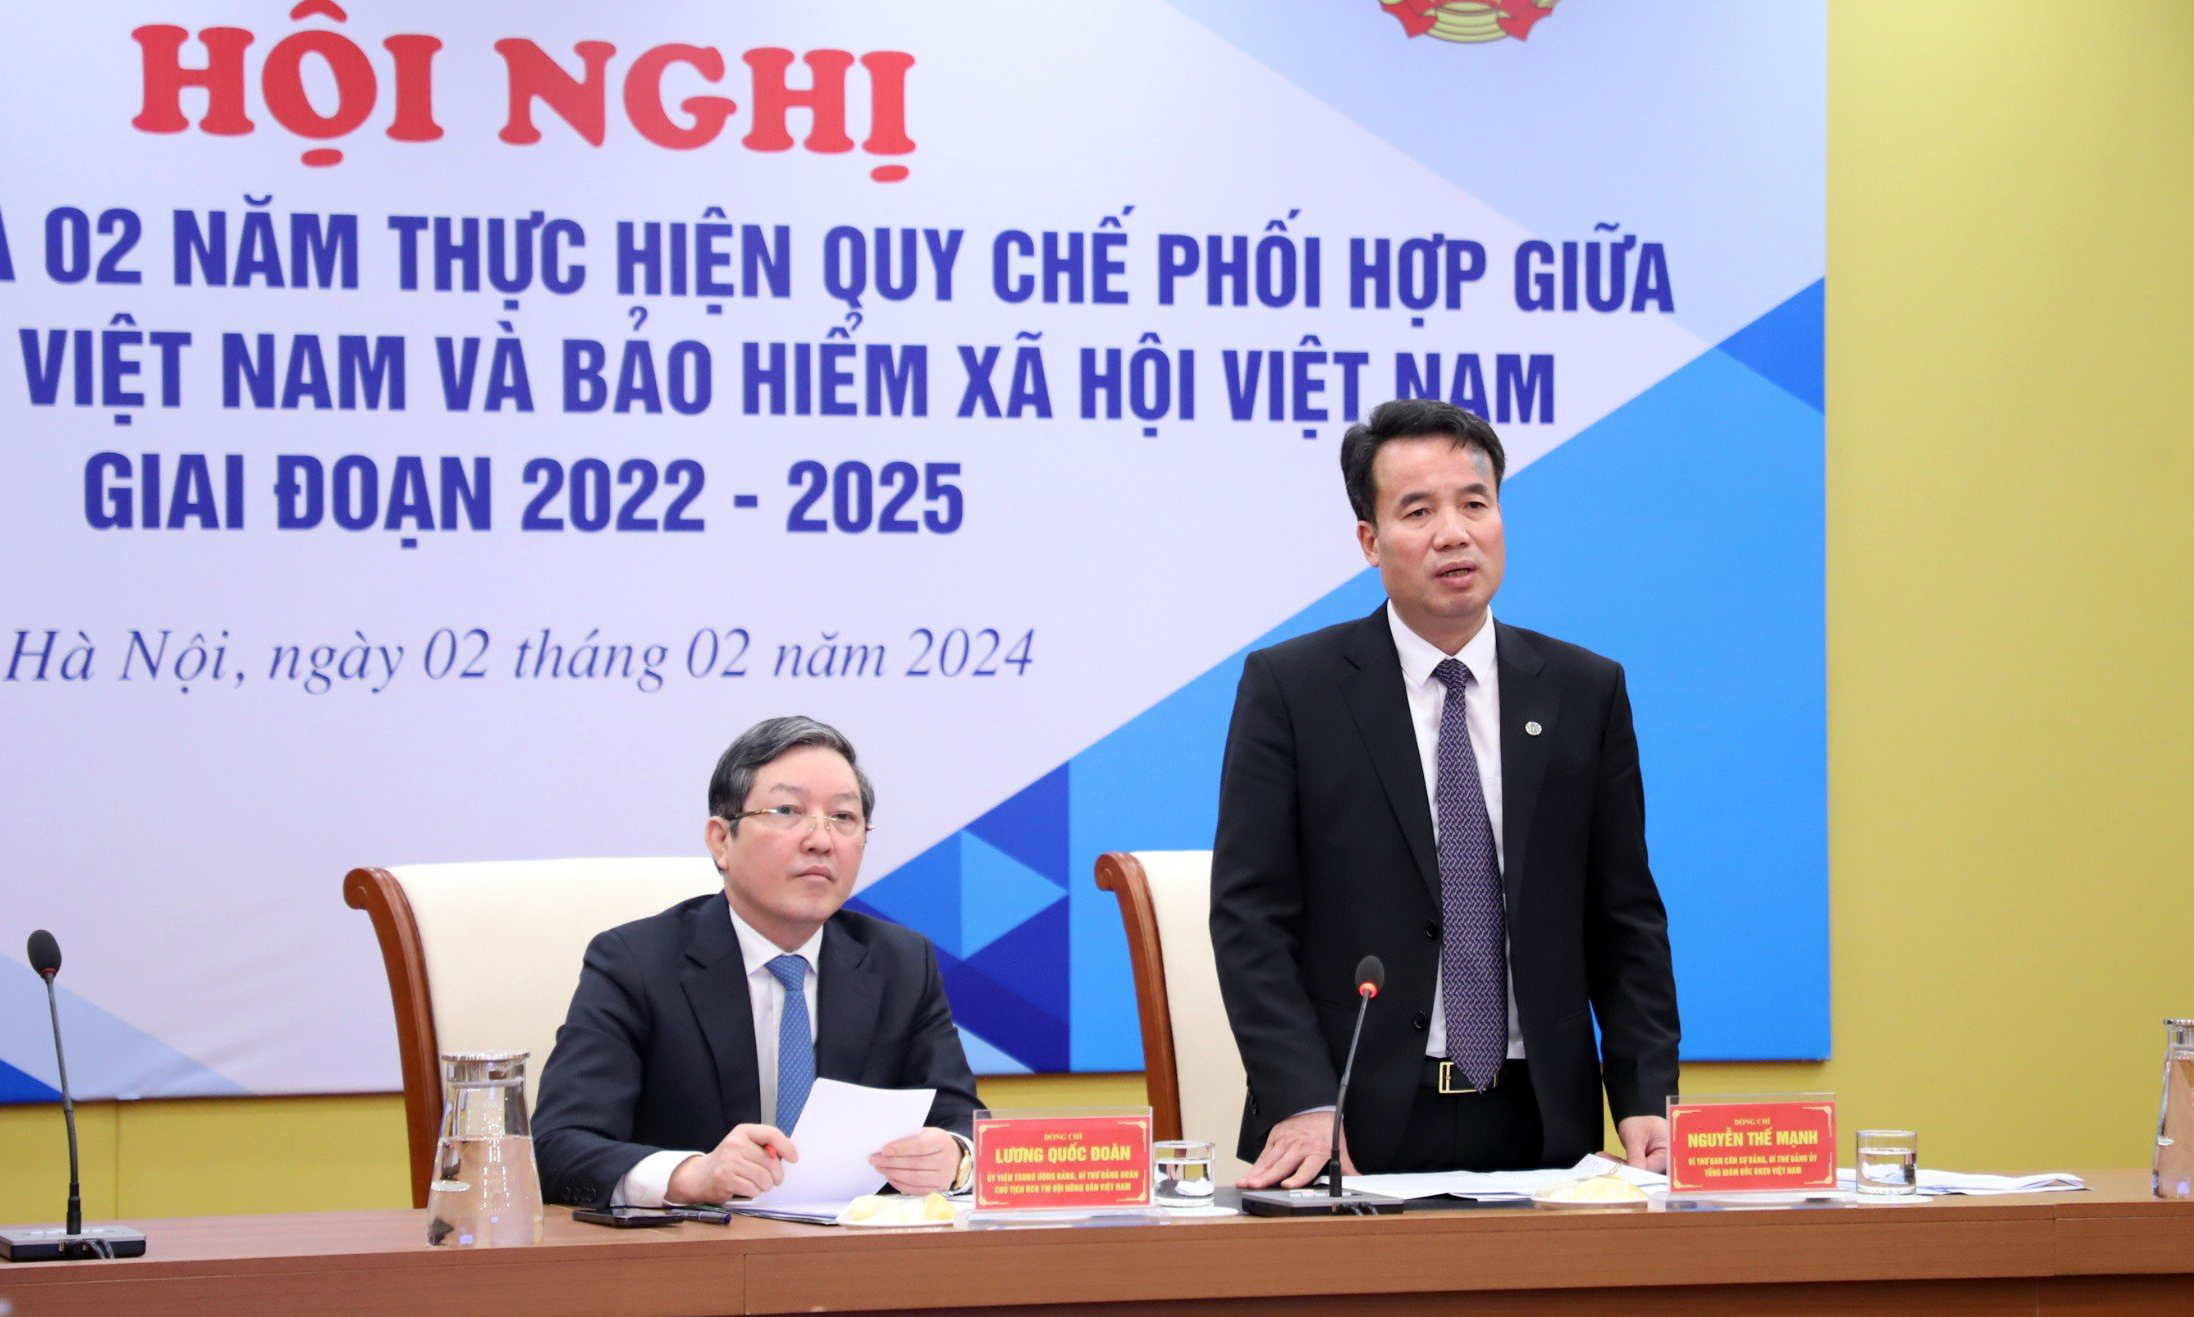 Hội nghị đánh giá kết quả 2 năm thực hiện Quy chế phối hợp giữa Hội Nông dân Việt Nam và BHXH Việt Nam giai đoạn 2022-2025